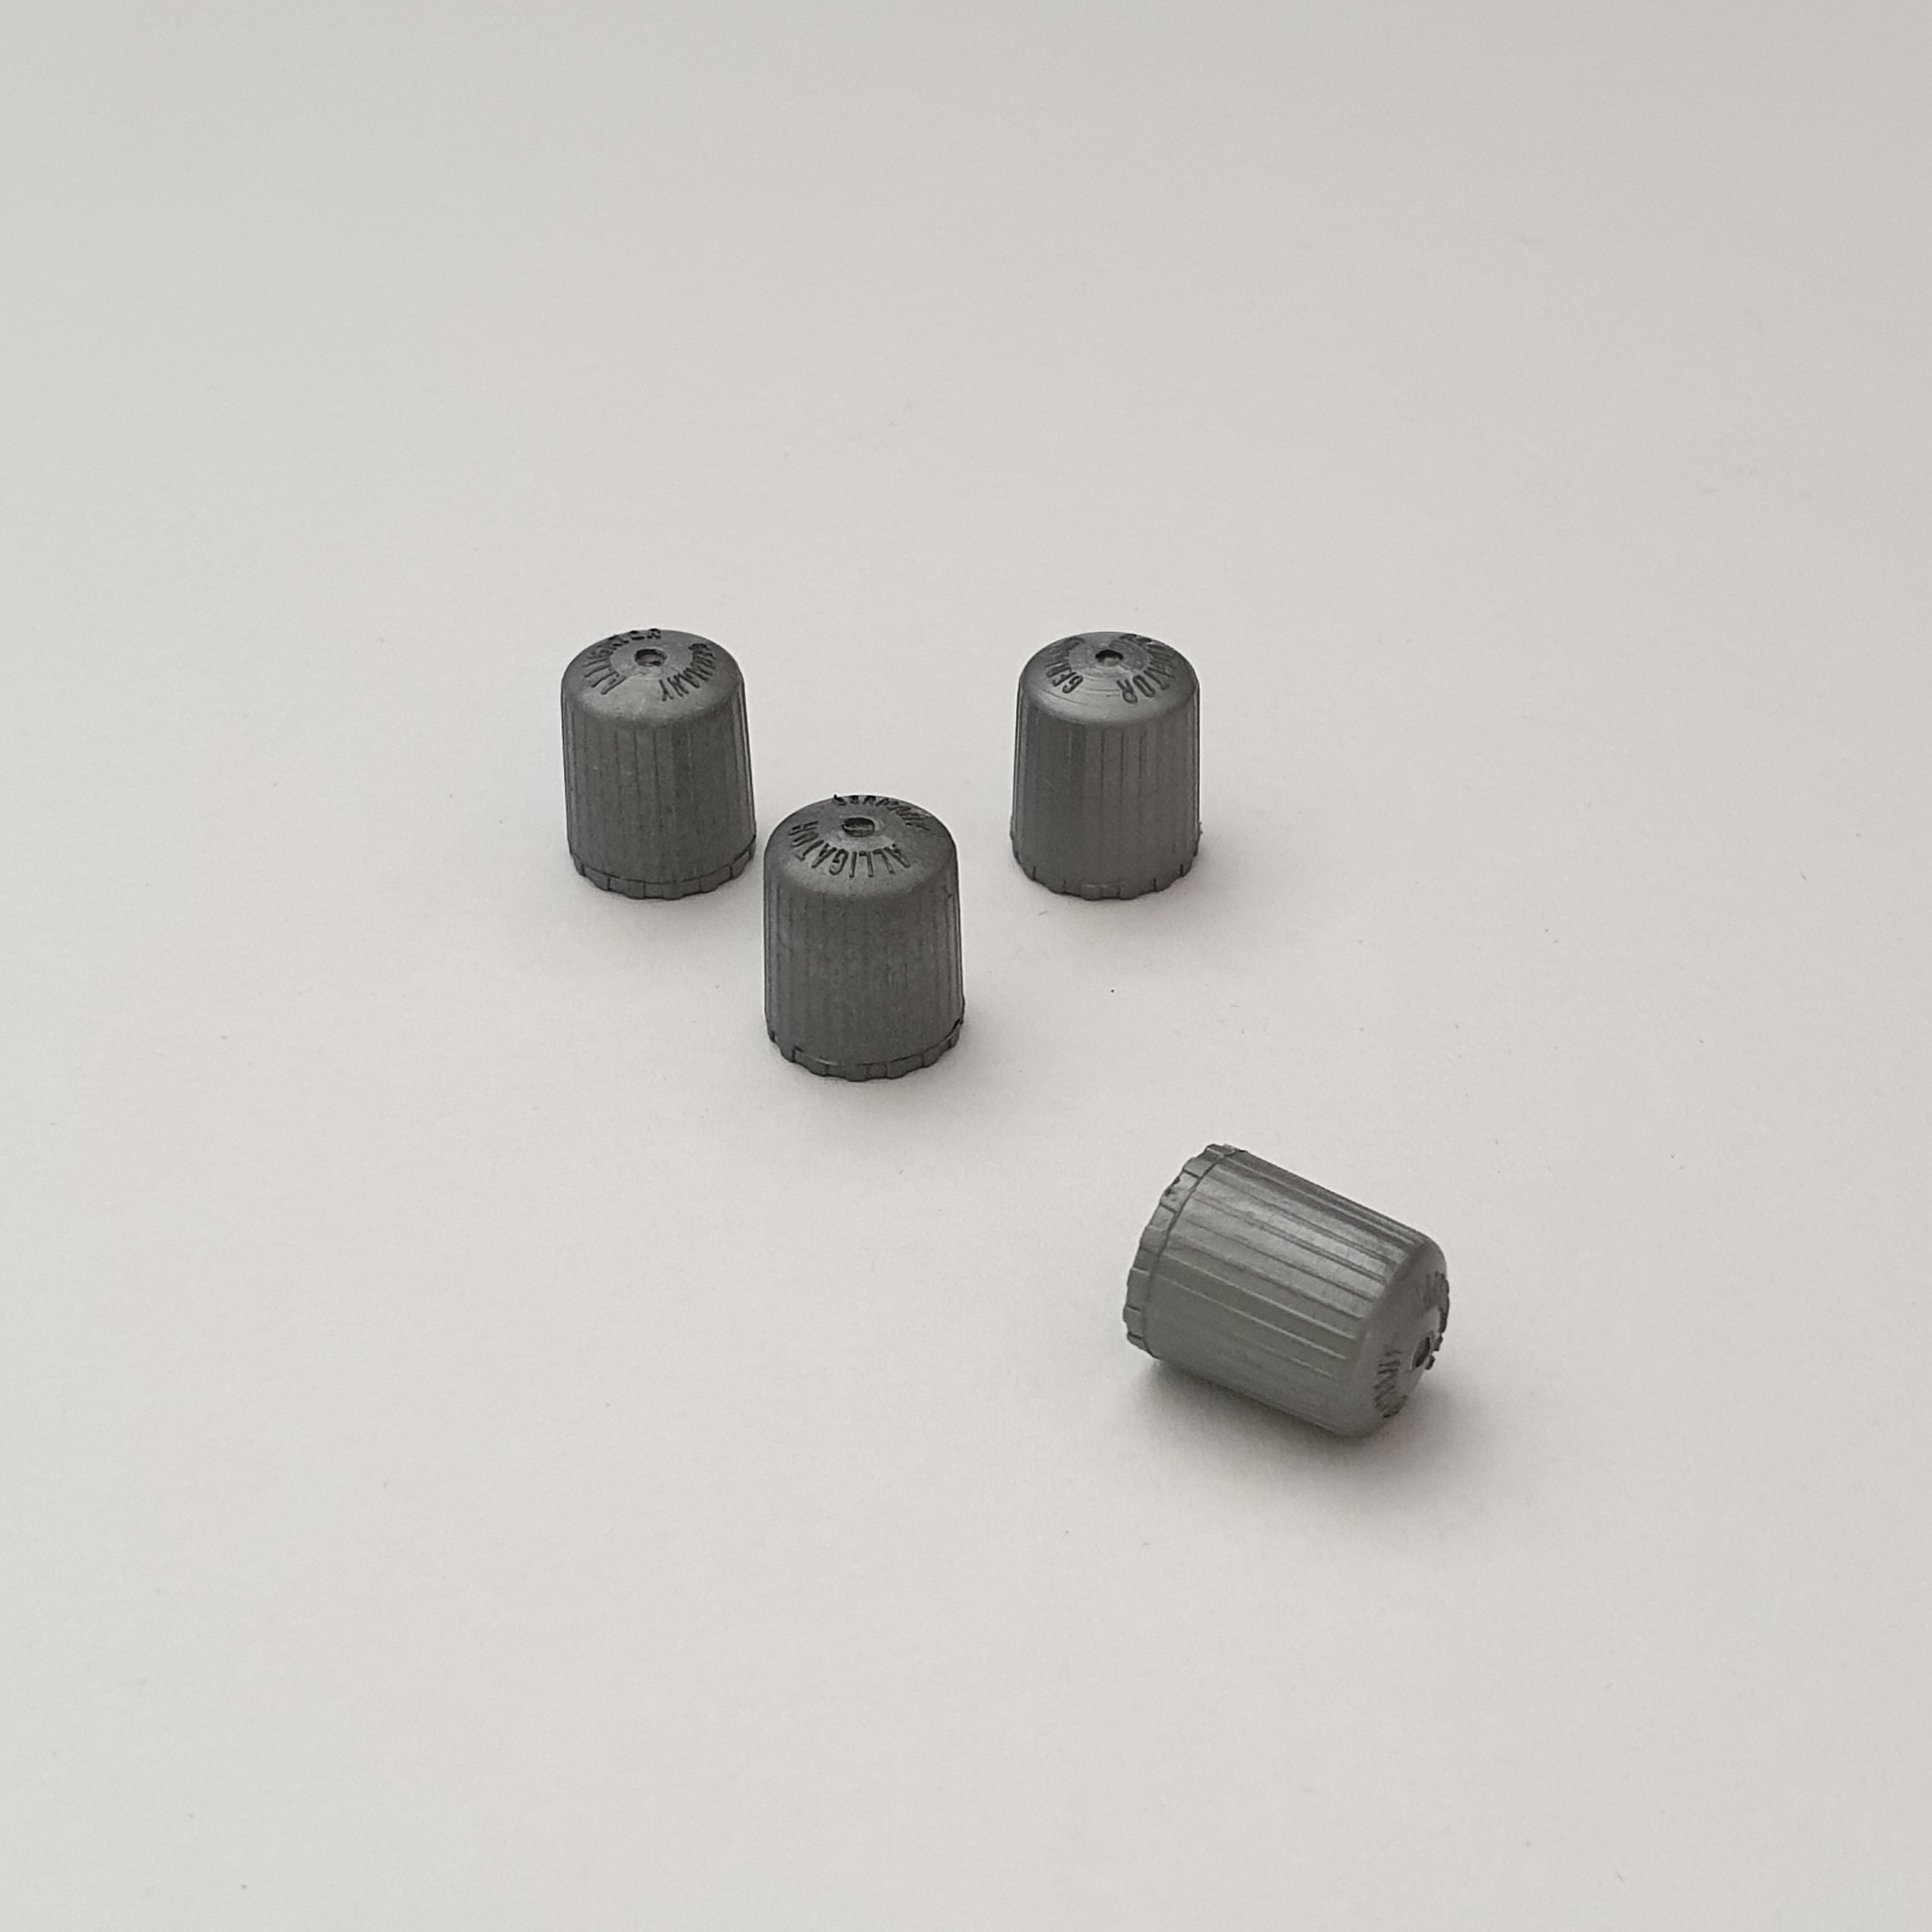 4x Alu Zylinder Ventilkappe Dichtung Reifenventil Kappe in Silber für KIA PKW